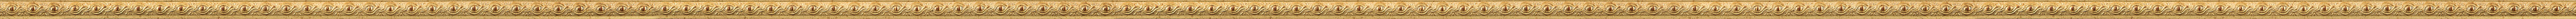 Κλασική λεπτή κορνίζα με φύλλο χρυσού frame